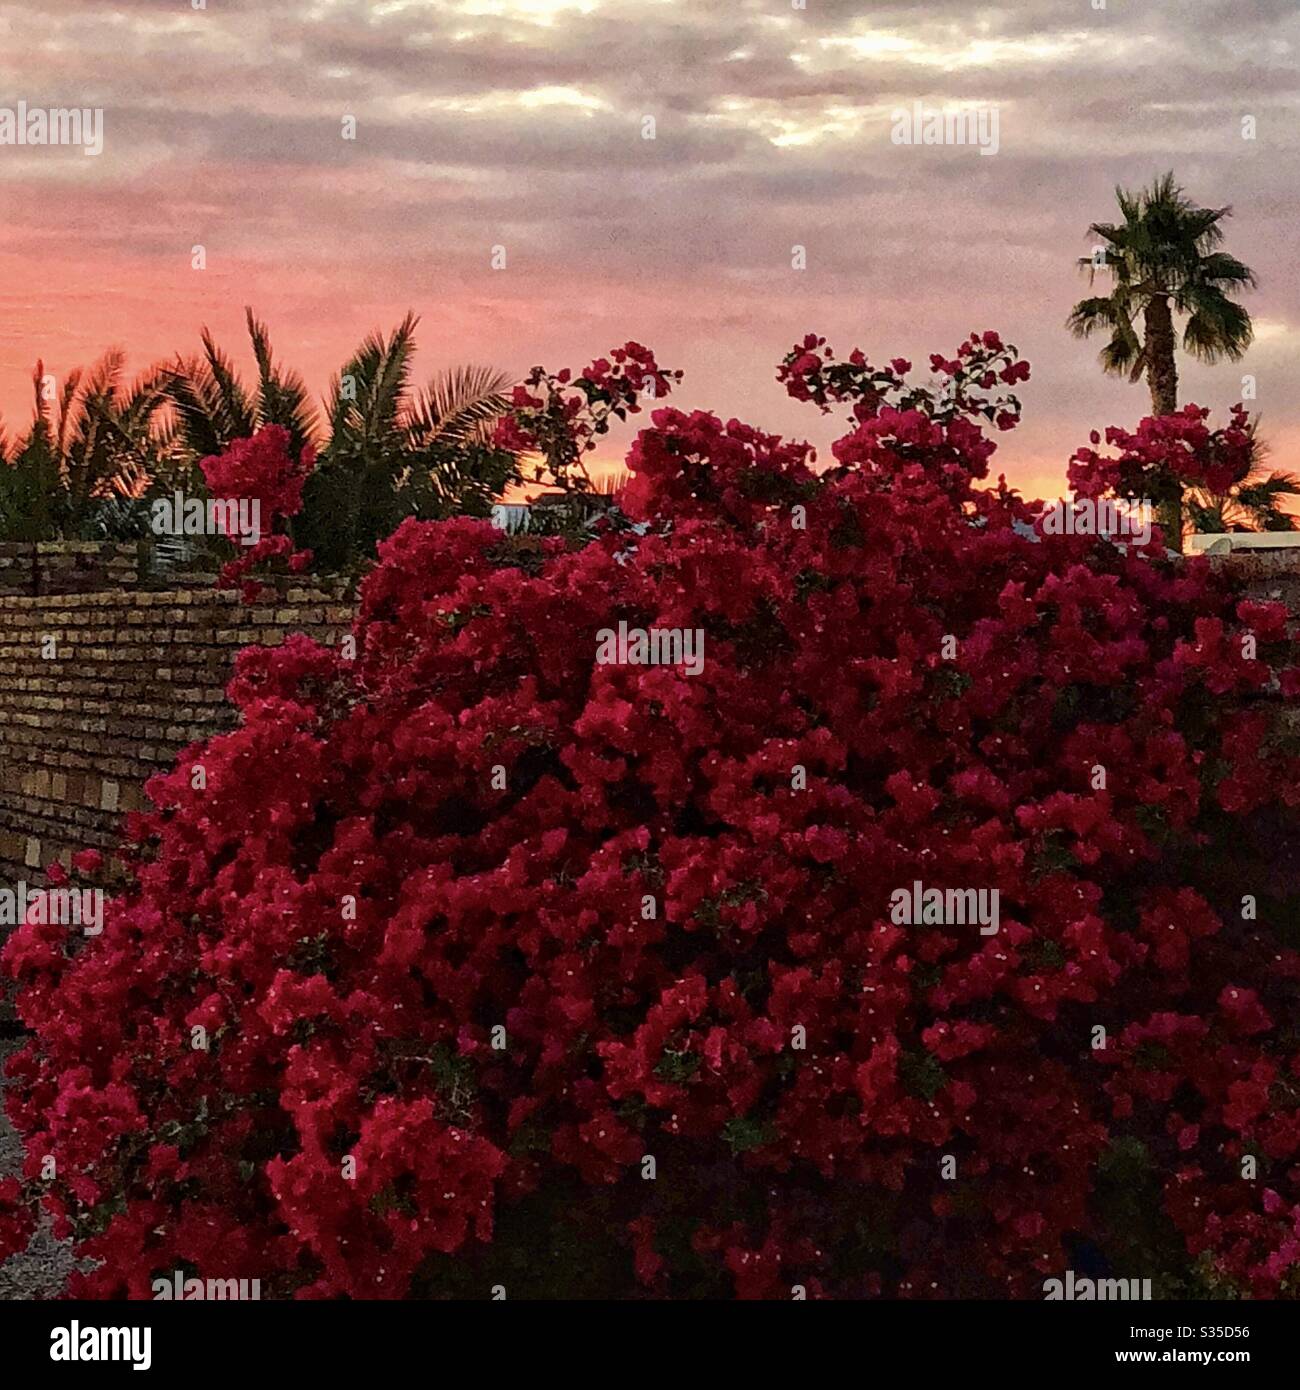 Roter Sonnenuntergang, roter Bougainvillea Busch, groß, Backsteinmauer, Palmen im Hintergrund, Schönheit Sonnenuntergang, wunderschönen Busch, Abend, friedlich, Natur, natürlich Stockfoto